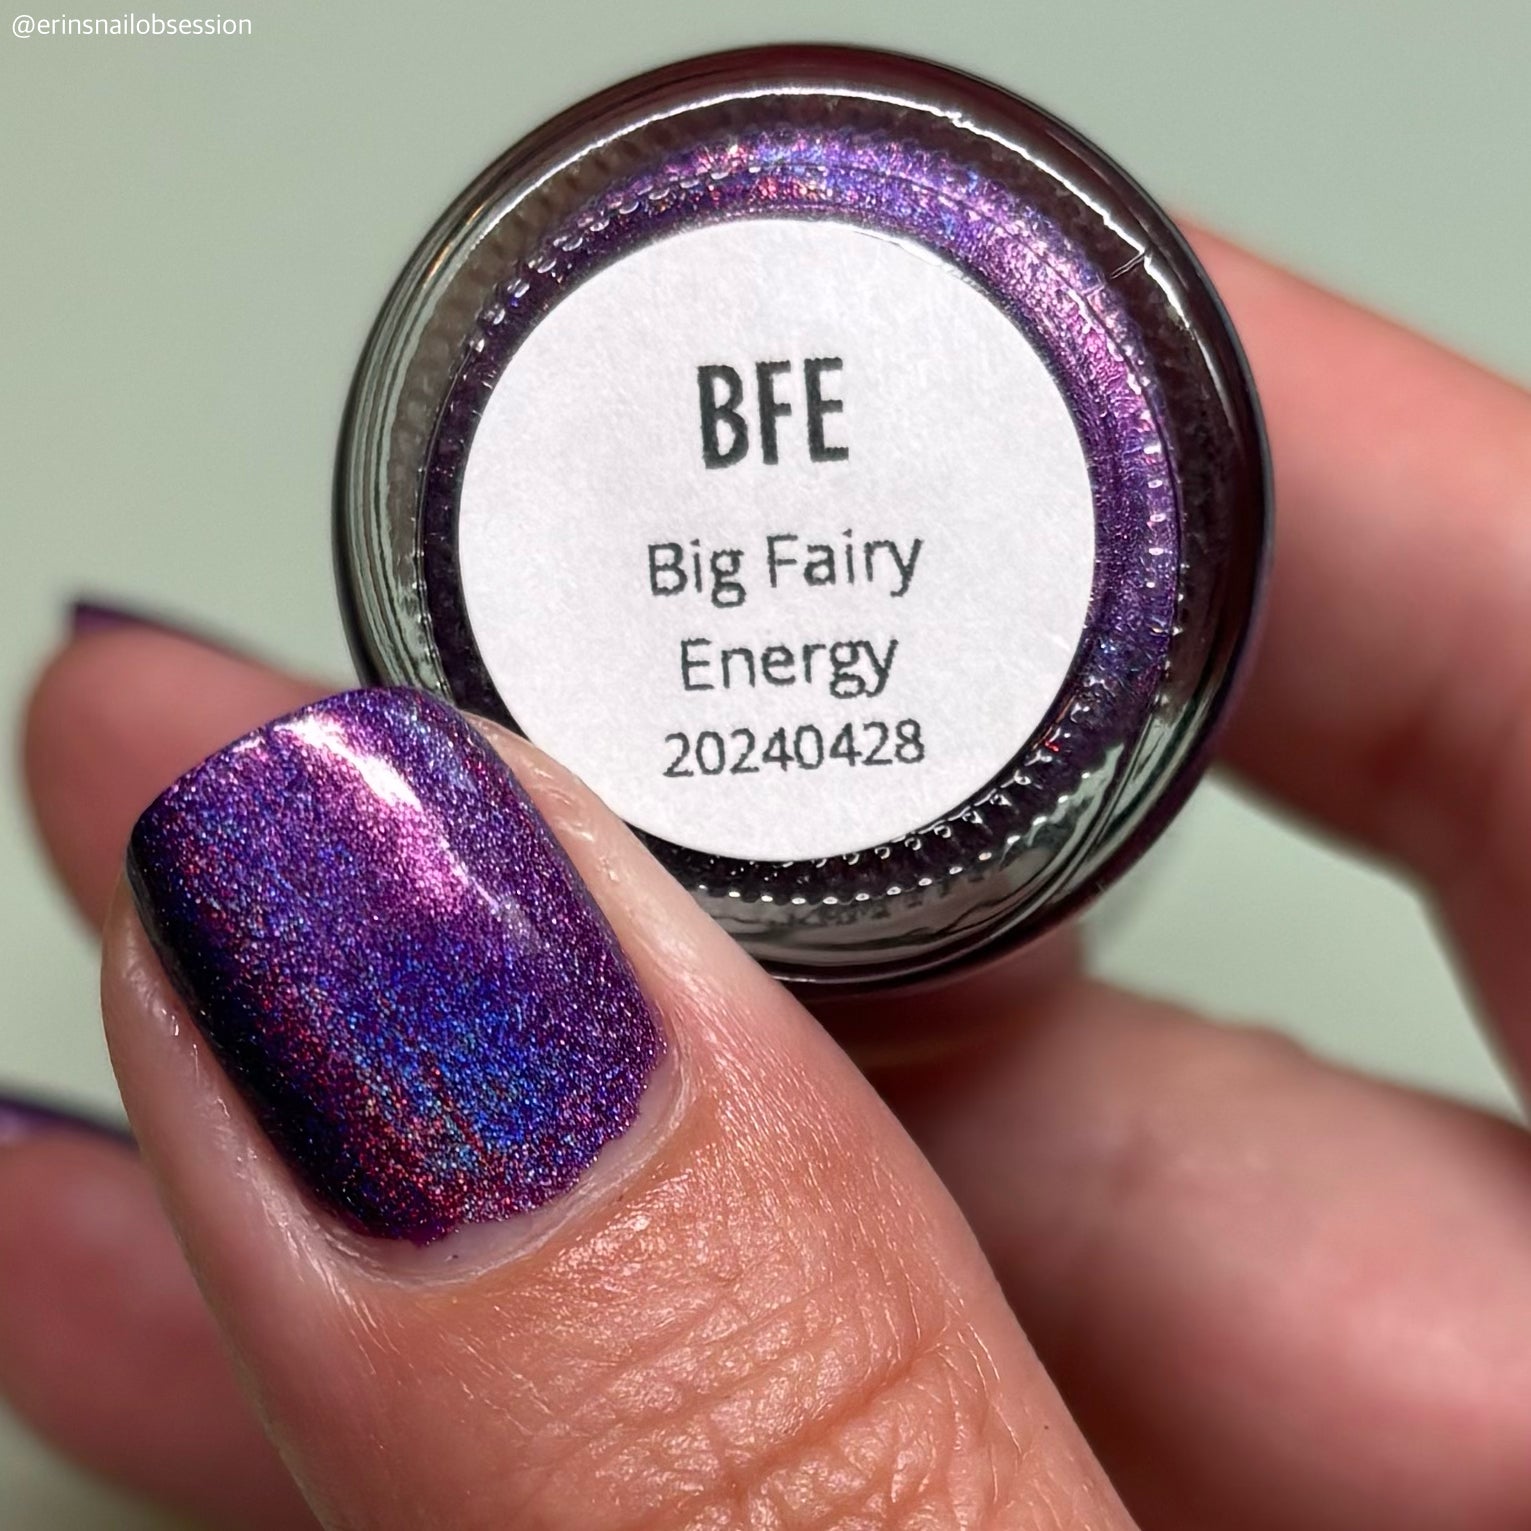 BFE (Big Fairy Energy)